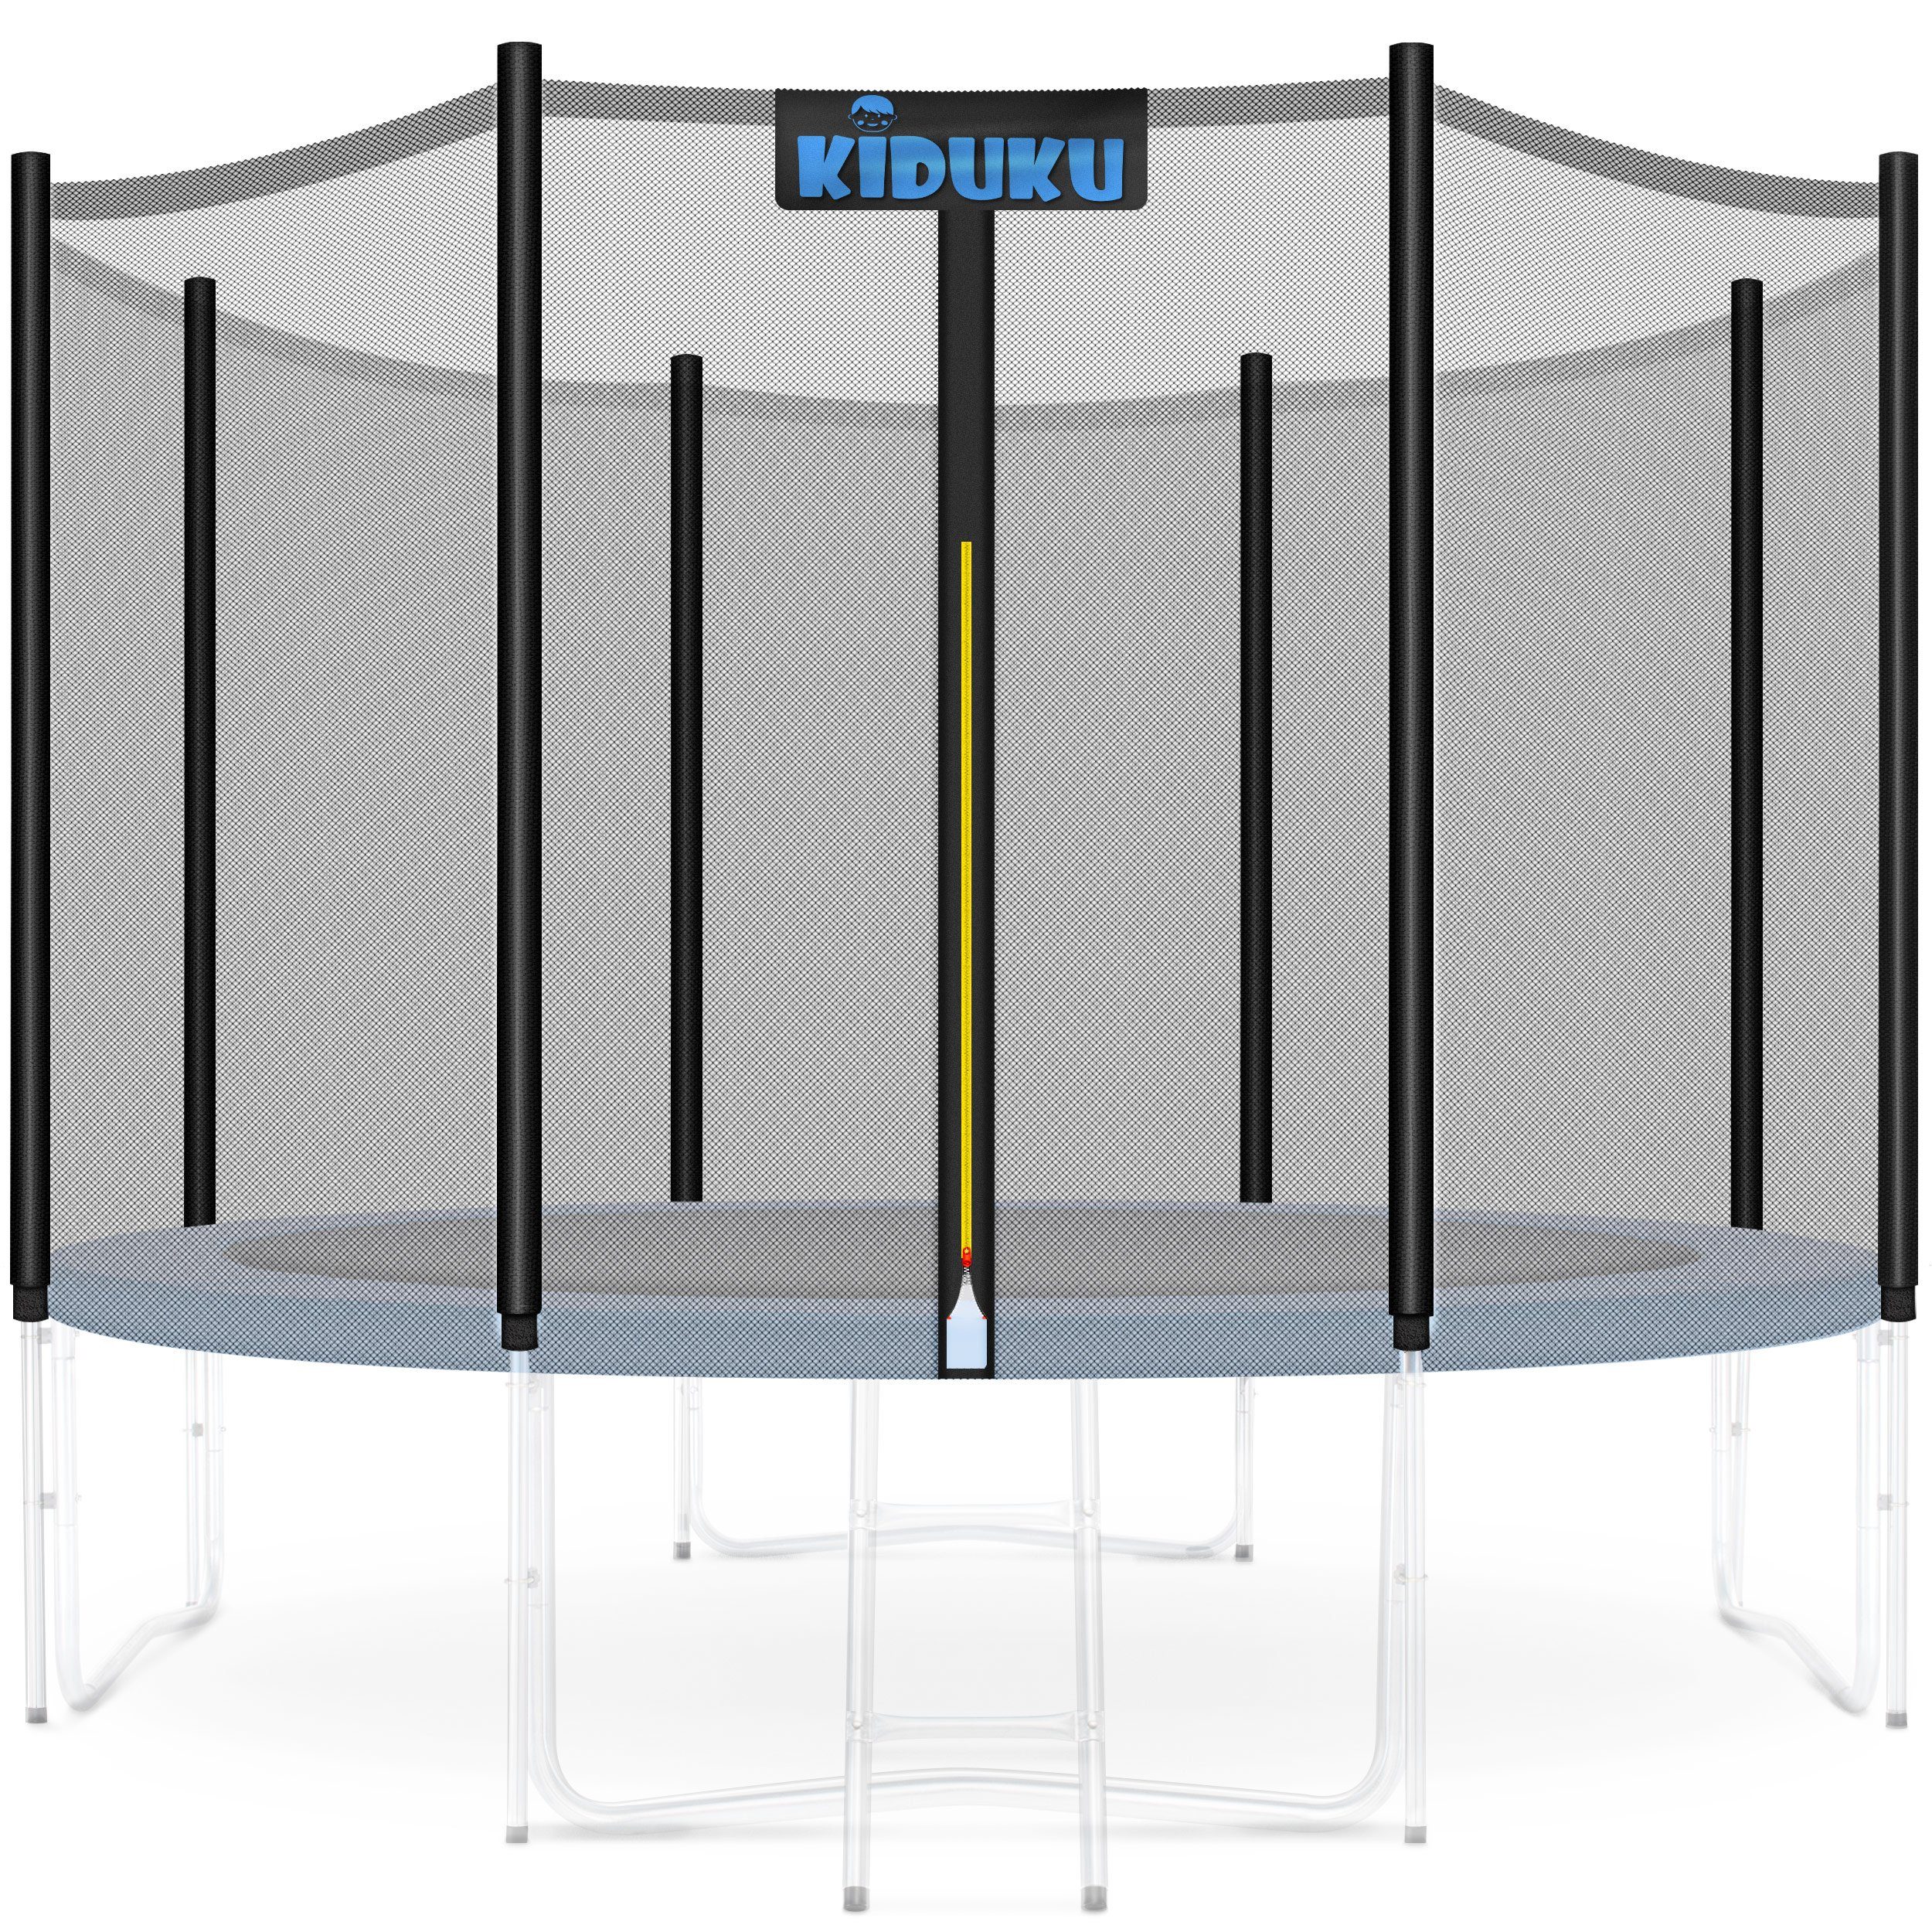 https://i.otto.de/i/otto/0736d62b-9e75-4767-a722-bbac838a9814/kiduku-trampolinnetz-trampolin-ersatznetz-sicherheitsnetz-trampolinersatznetz.jpg?$formatz$